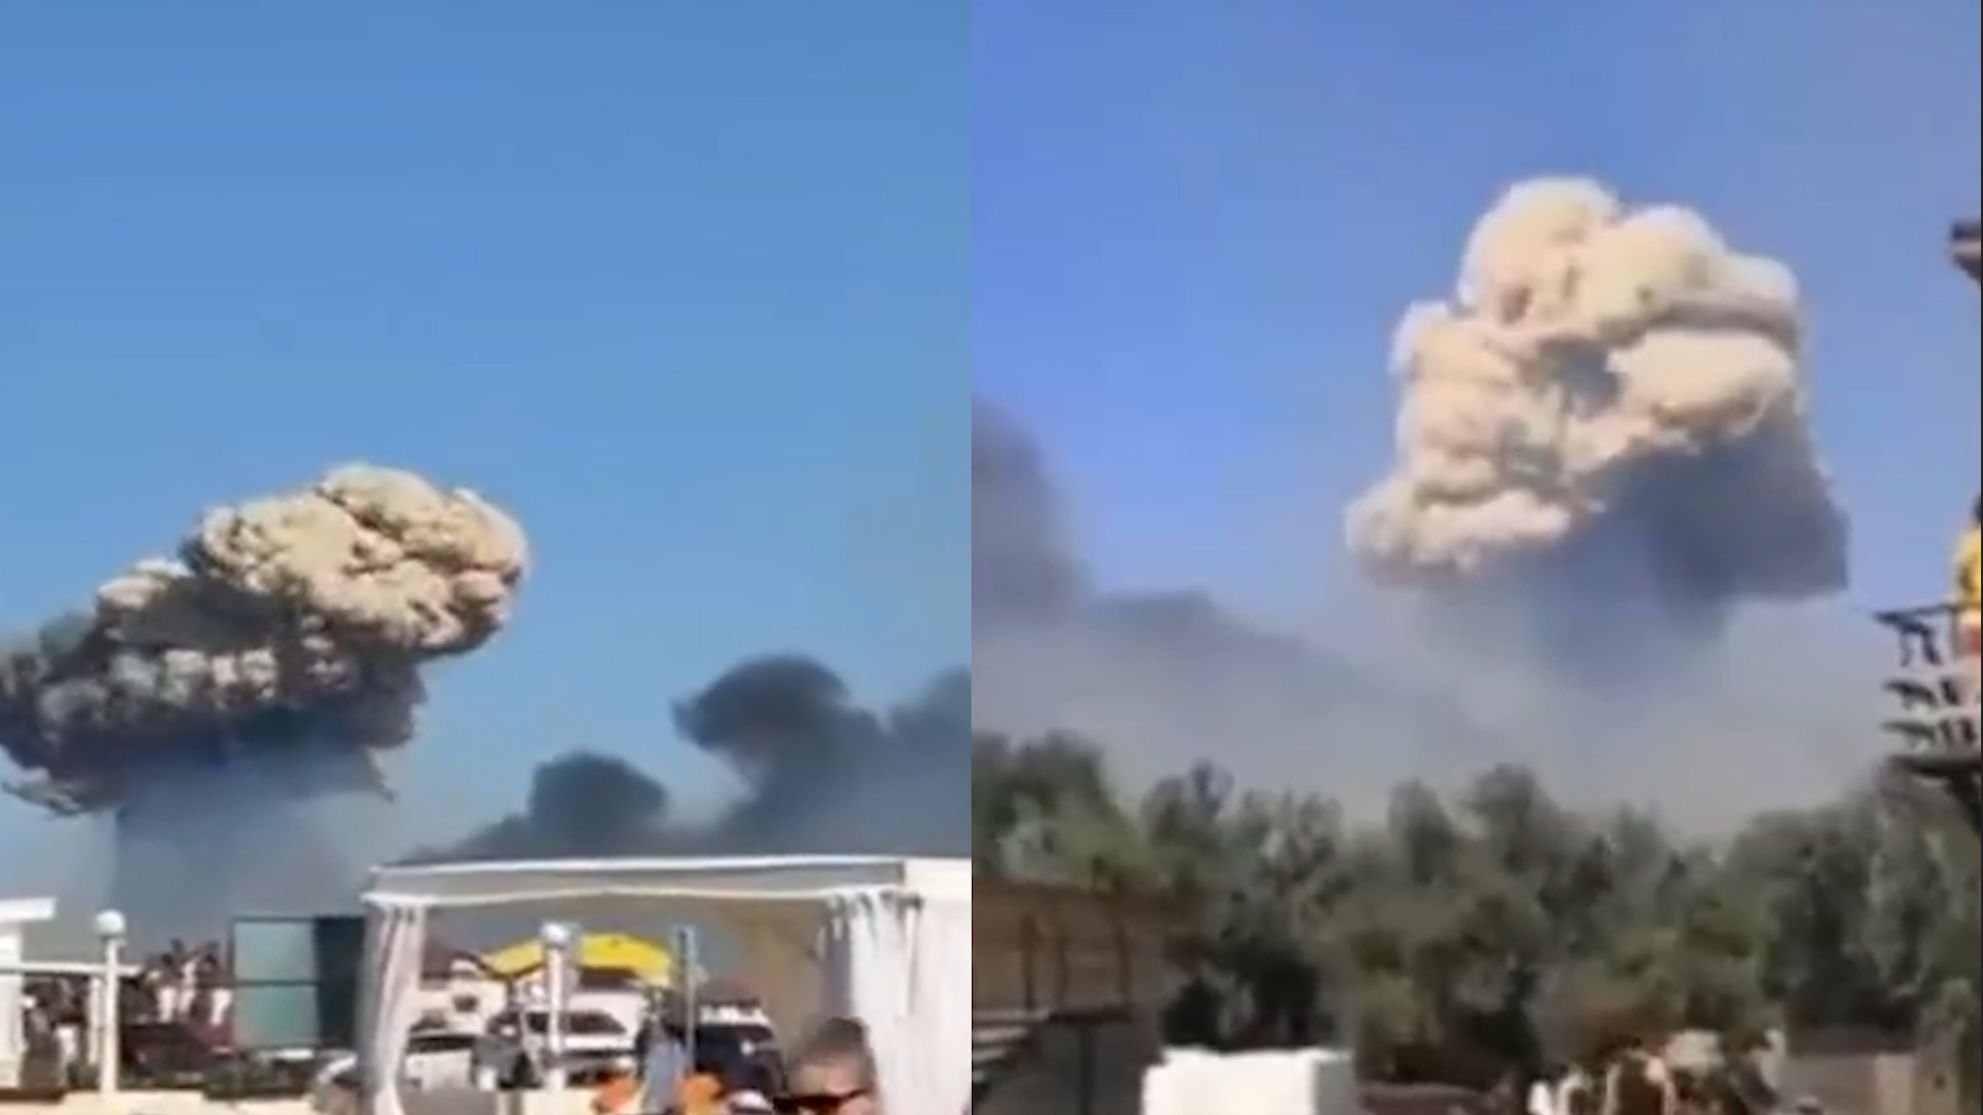 克里米亚俄军空军基地发生剧烈爆炸 巨型蘑菇云腾空升起 现场曝光